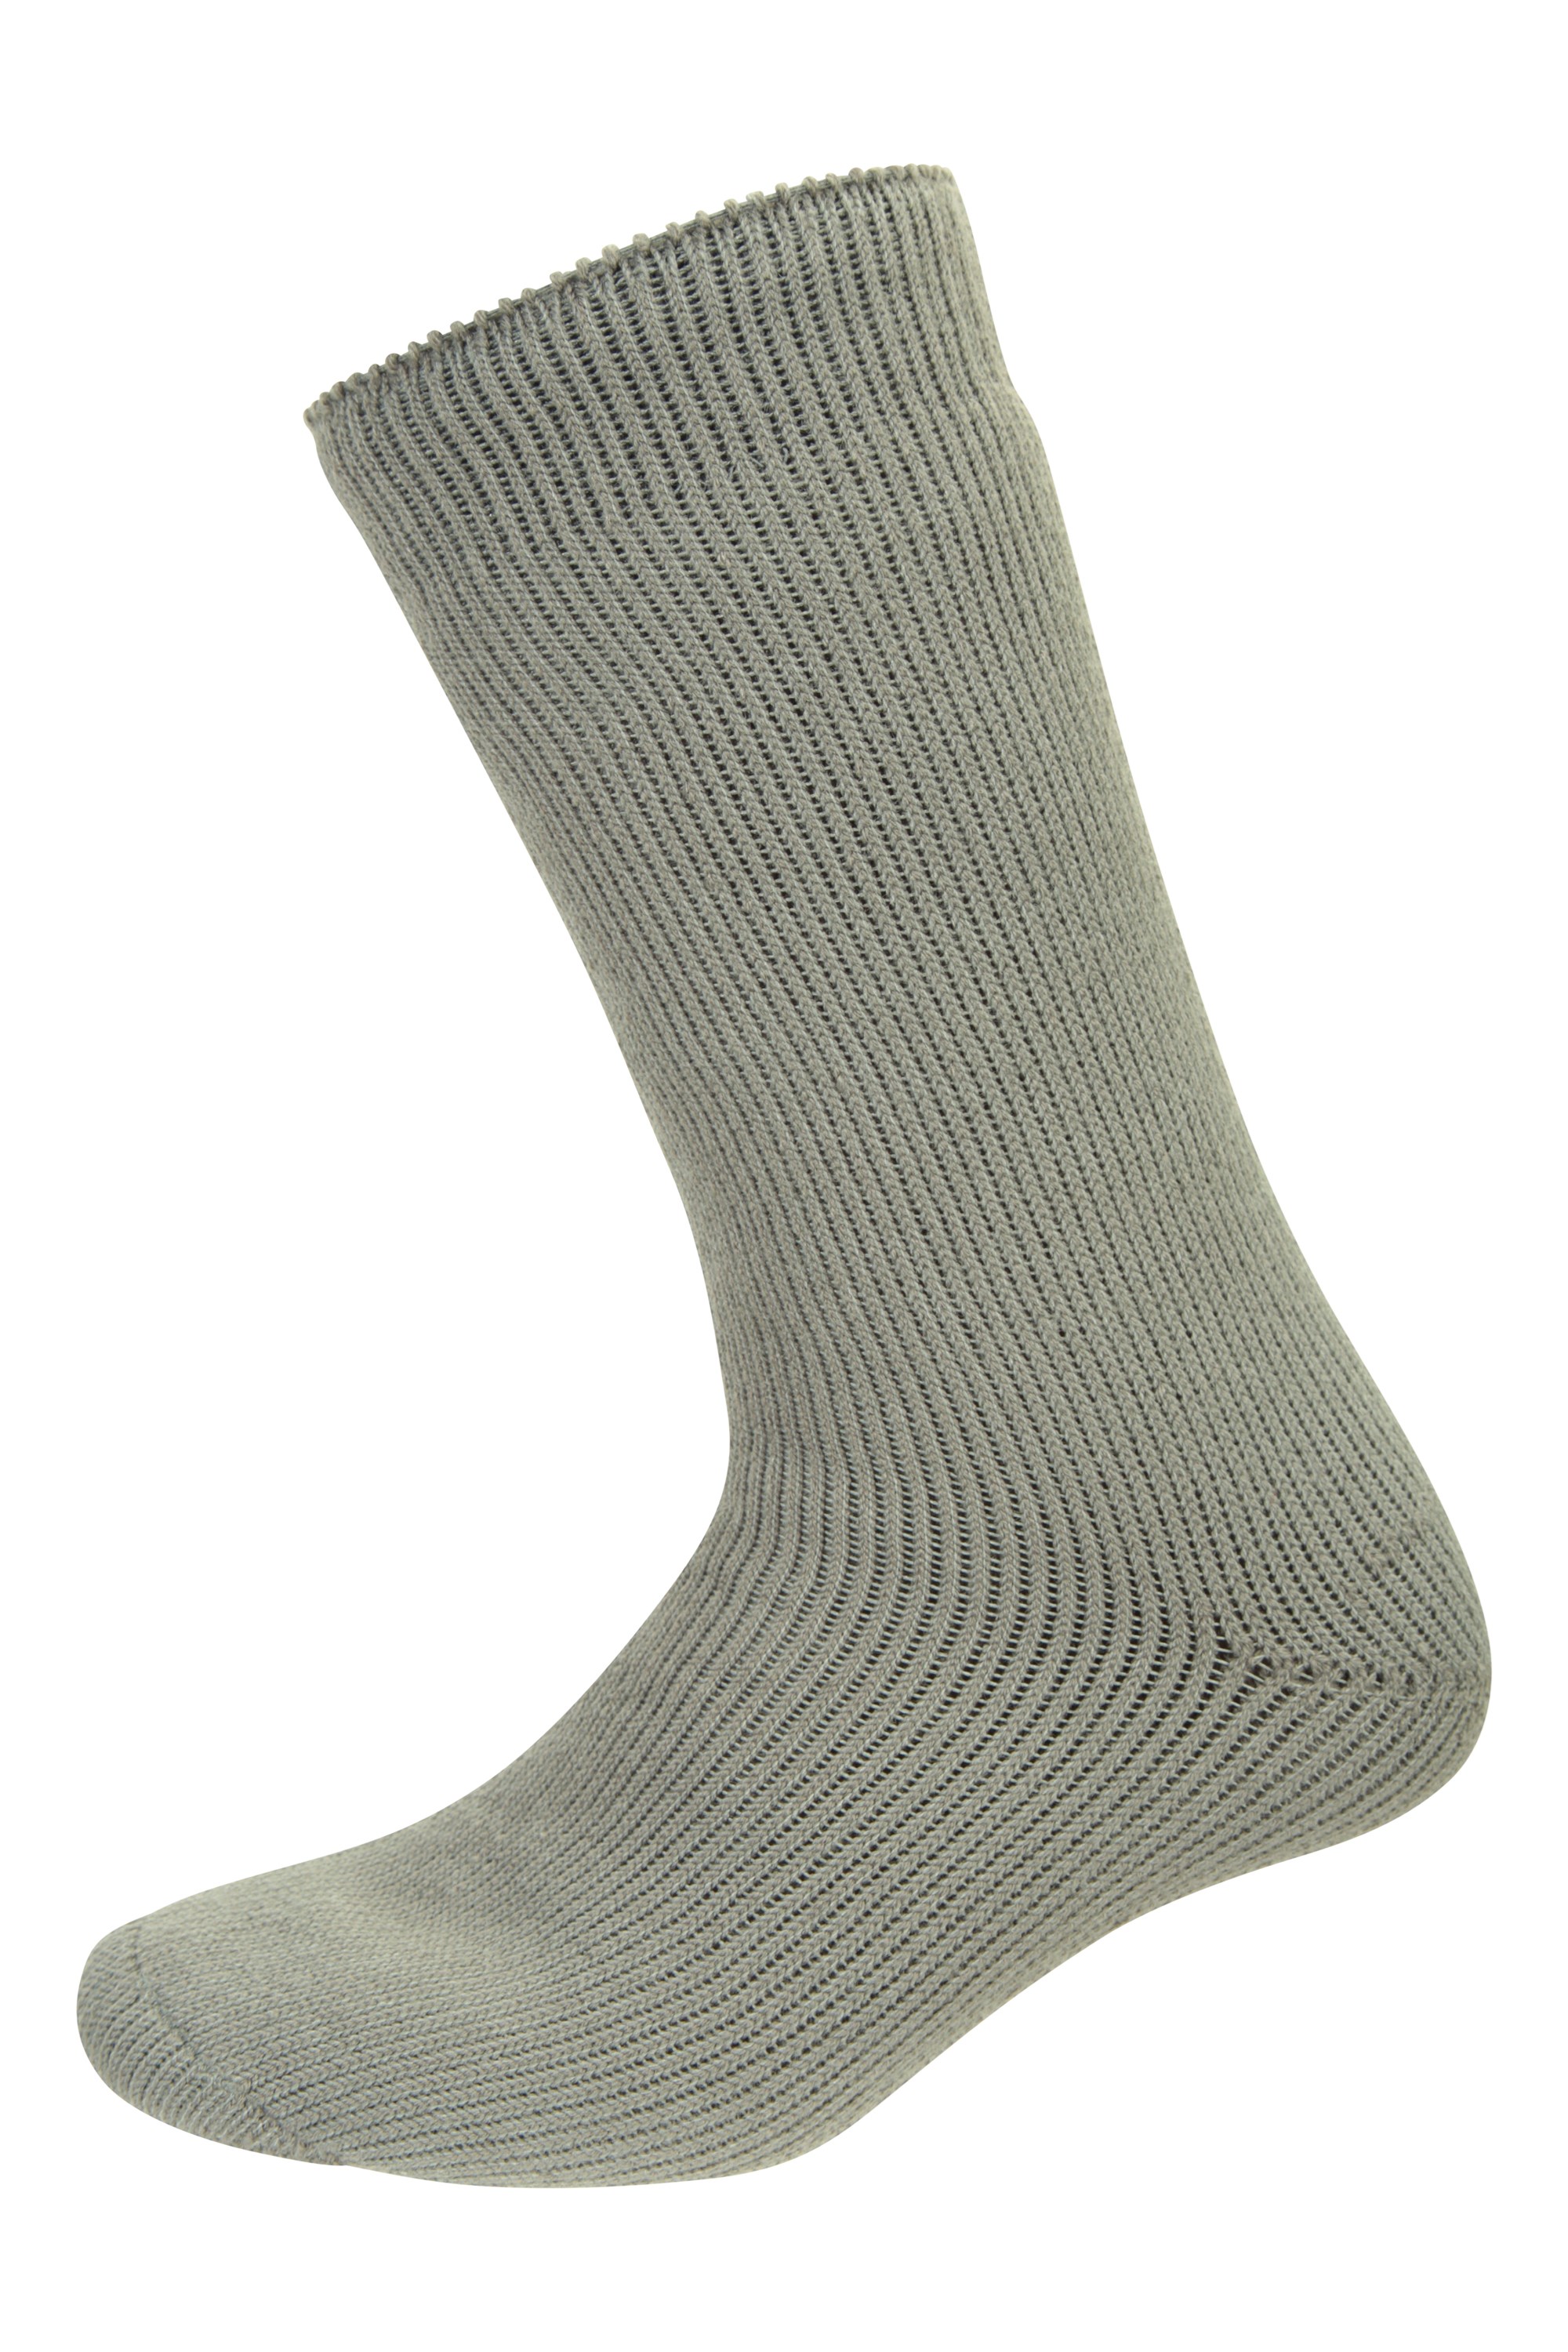 Mens Thermal Socks - Grey